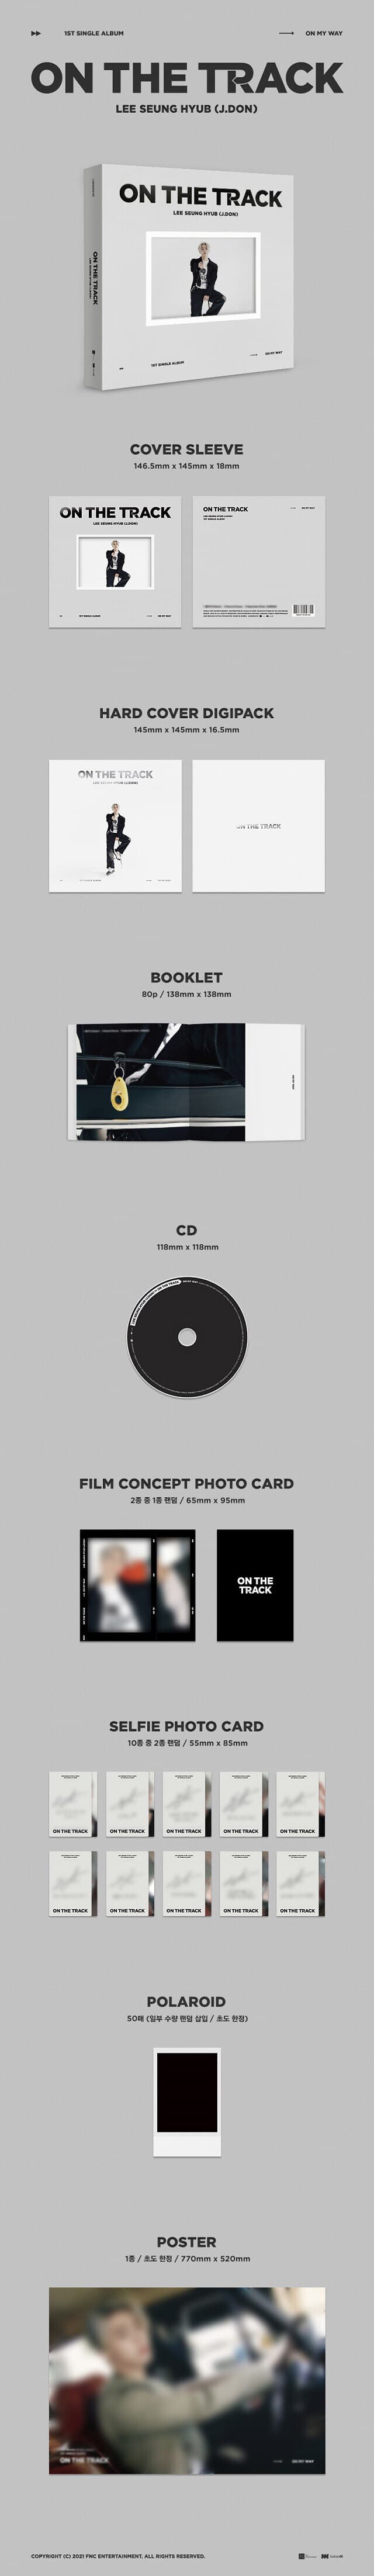 [미개봉] 이승협 (J.Don) / On The Track (1st Single) (To My Way/On My Way Ver. 랜덤 발송)